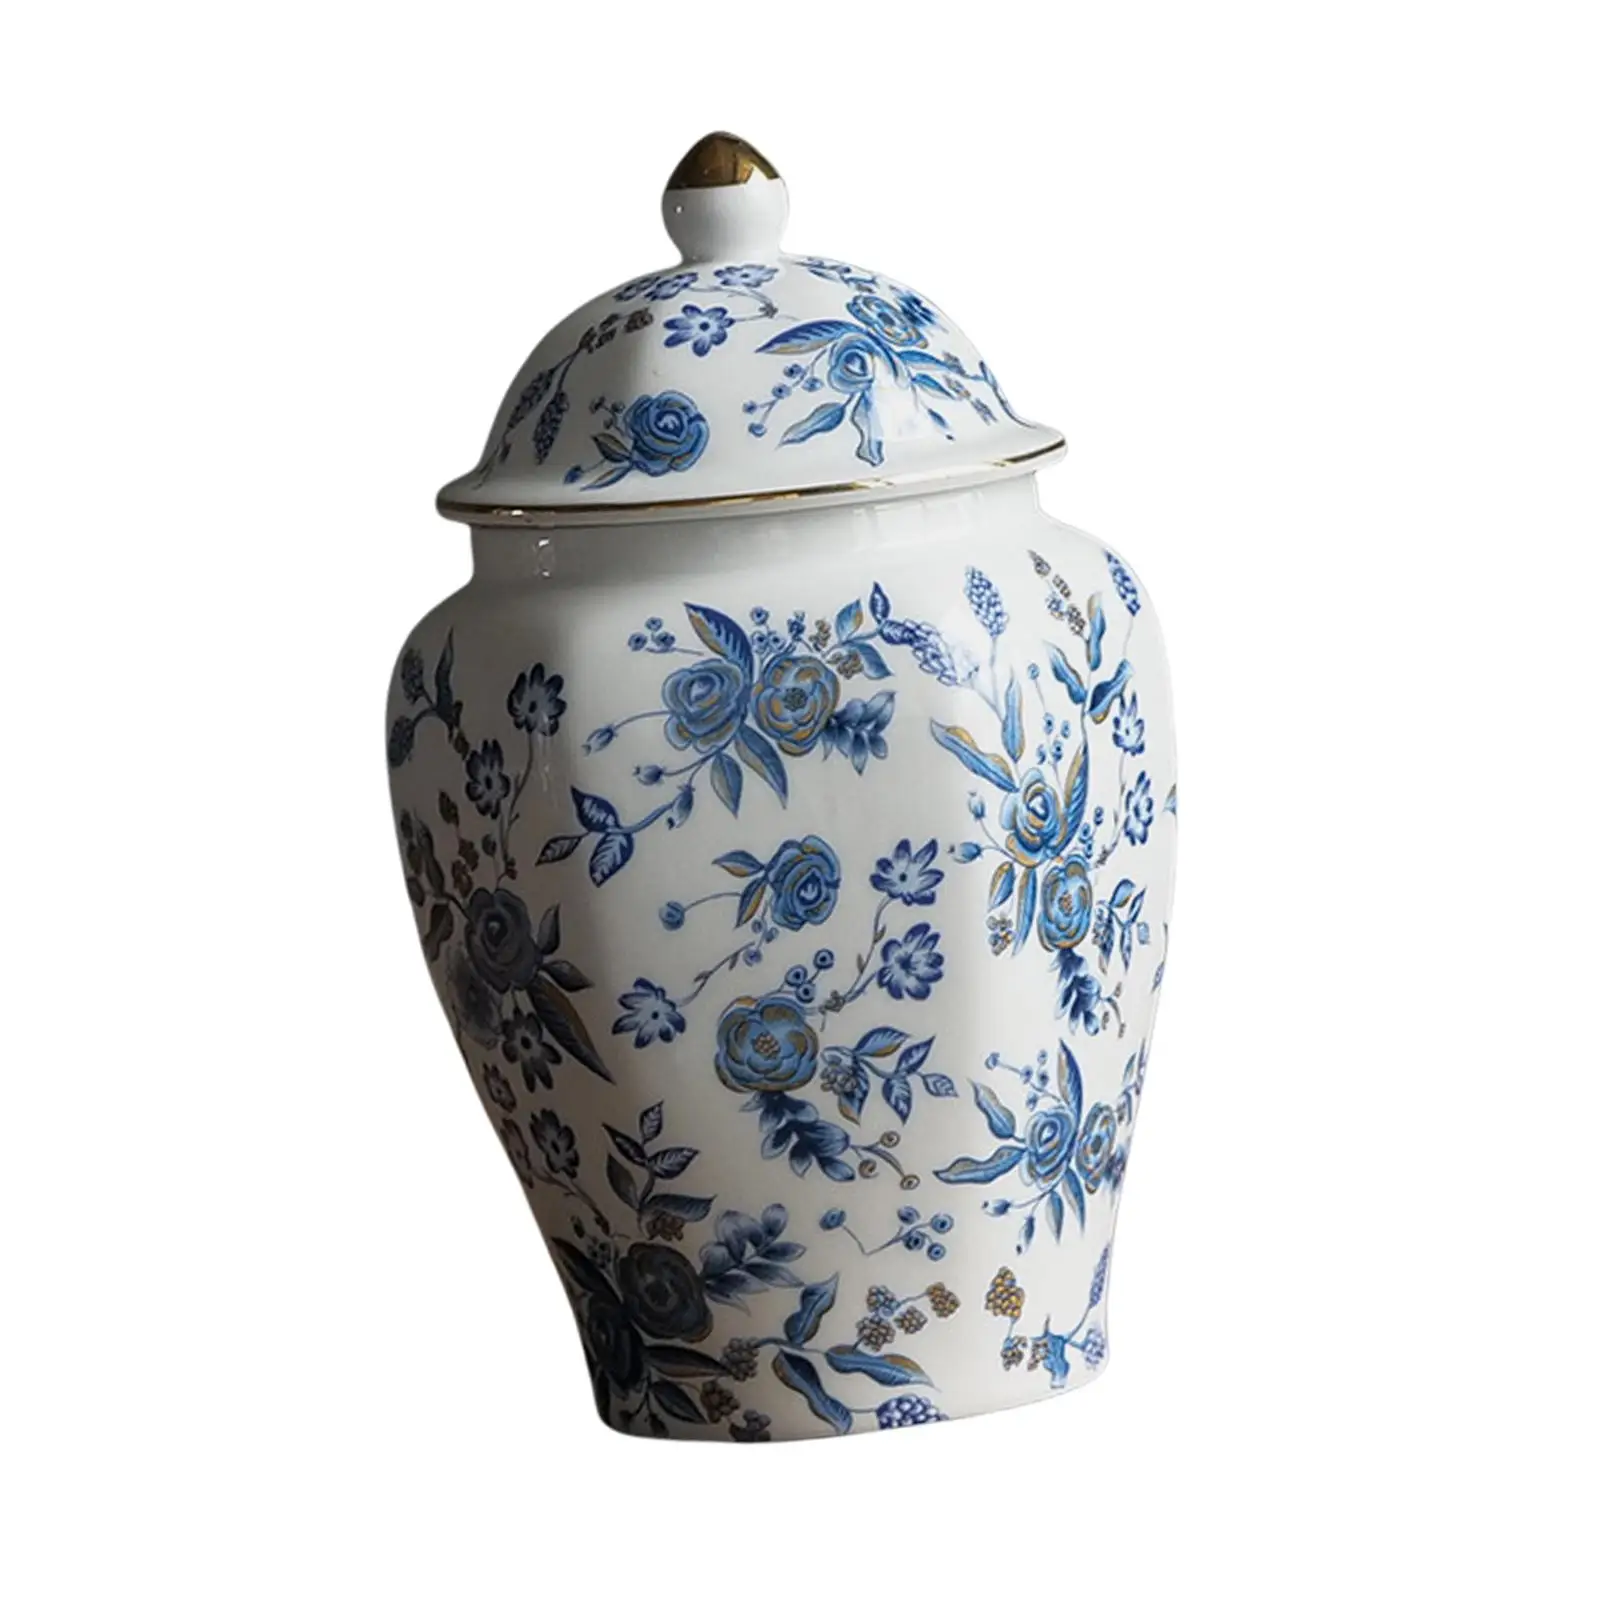 Flower Vase Storage Storage Jar Can Flower Arrangement Blue and White Porcelain Pot Elegant Ginger Jar with Lid Ceramic Tea Jar